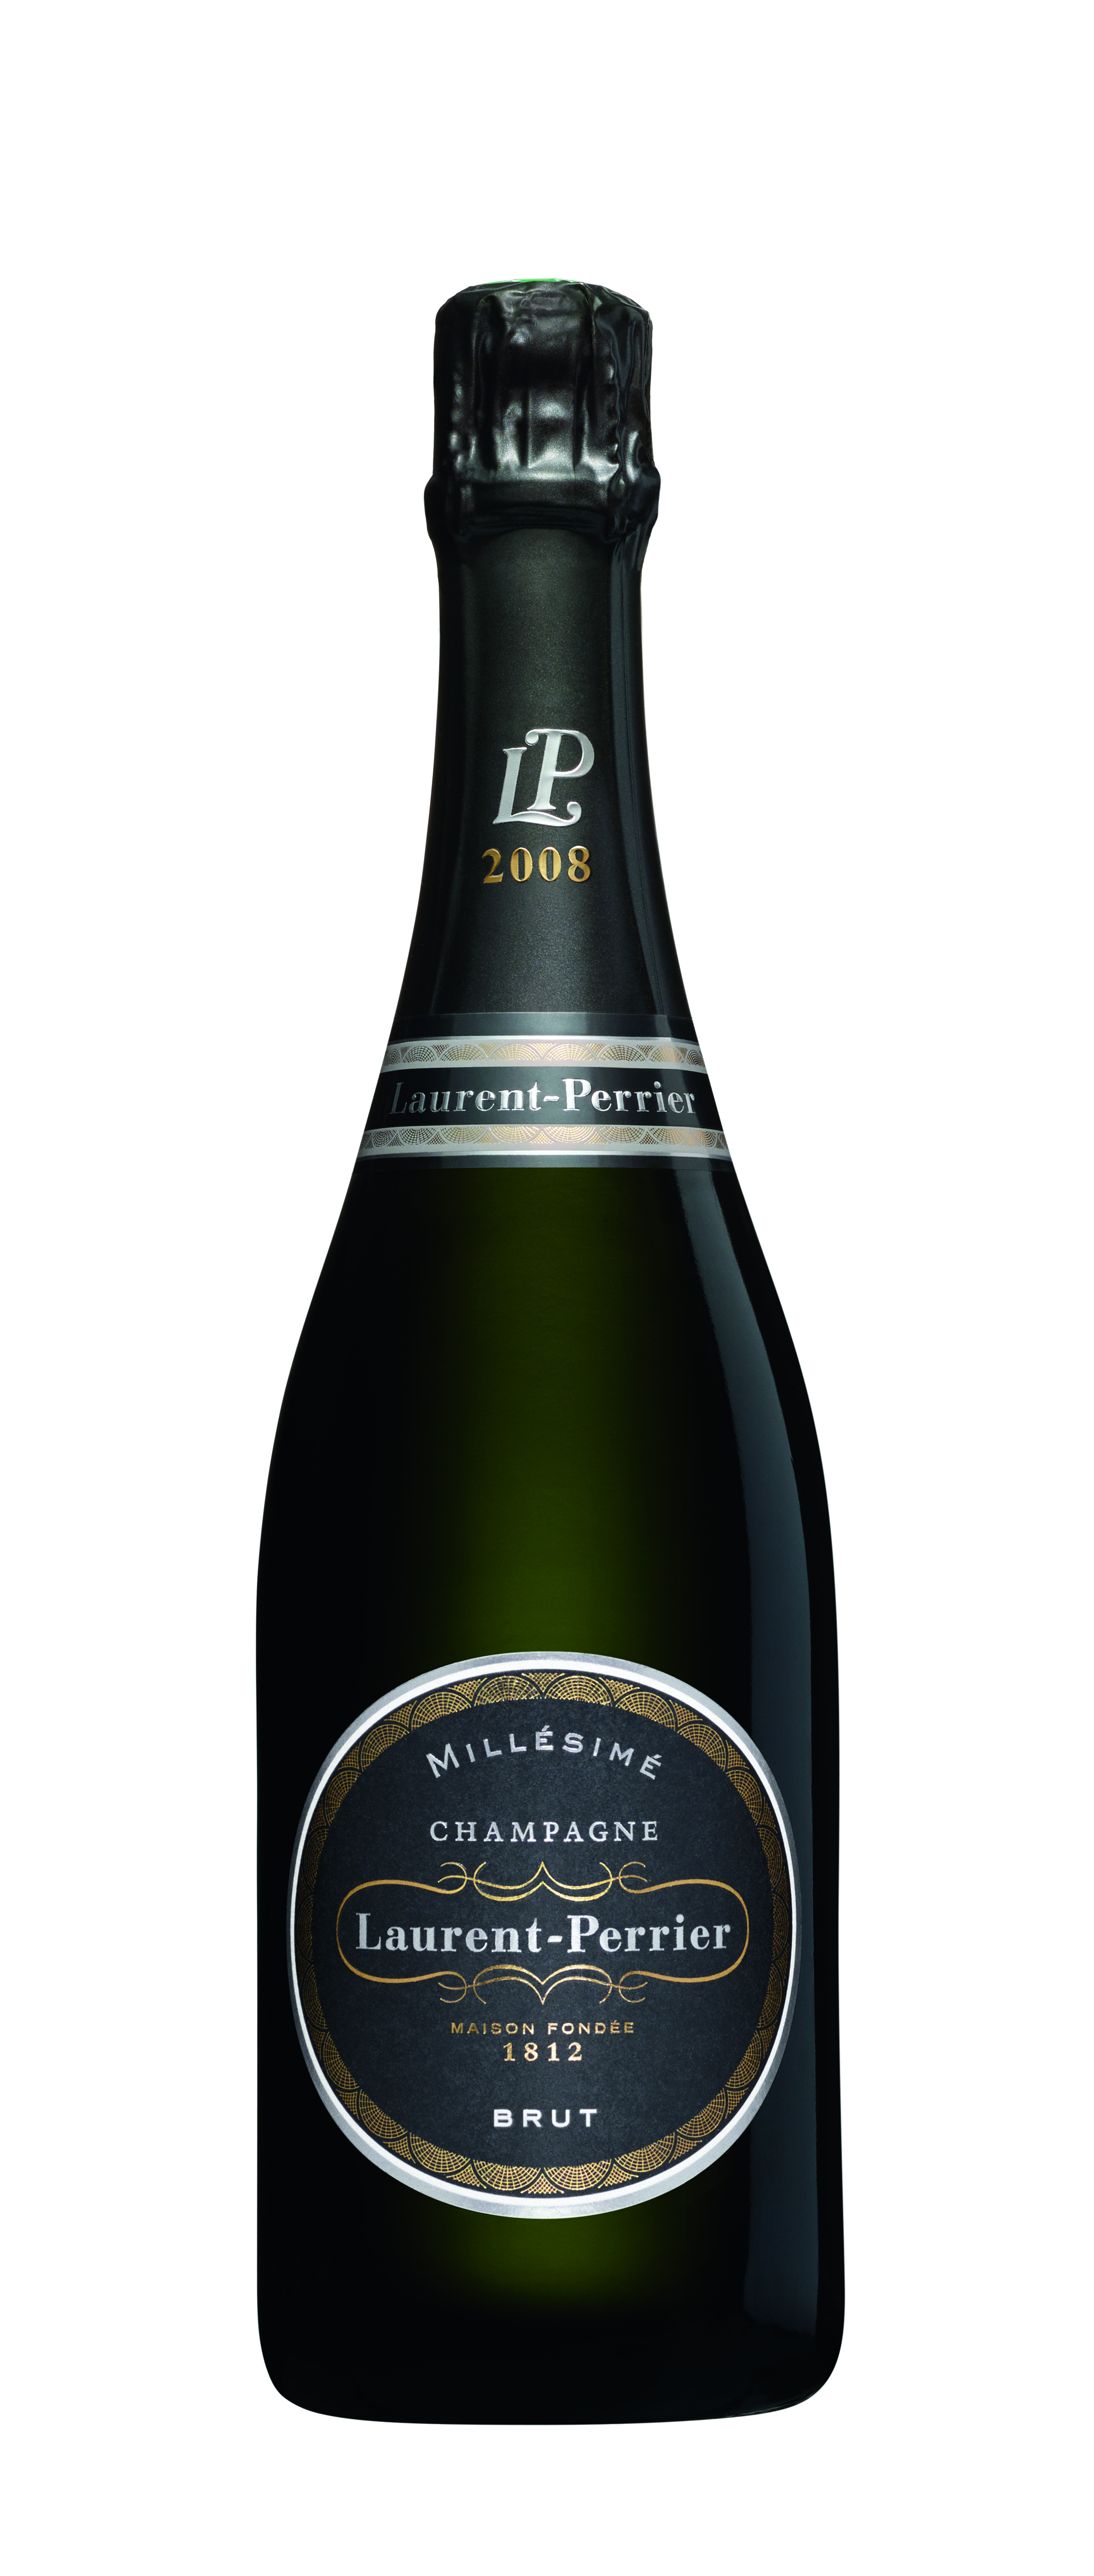 Champagner Laurent-Perrier Brut Millésimé